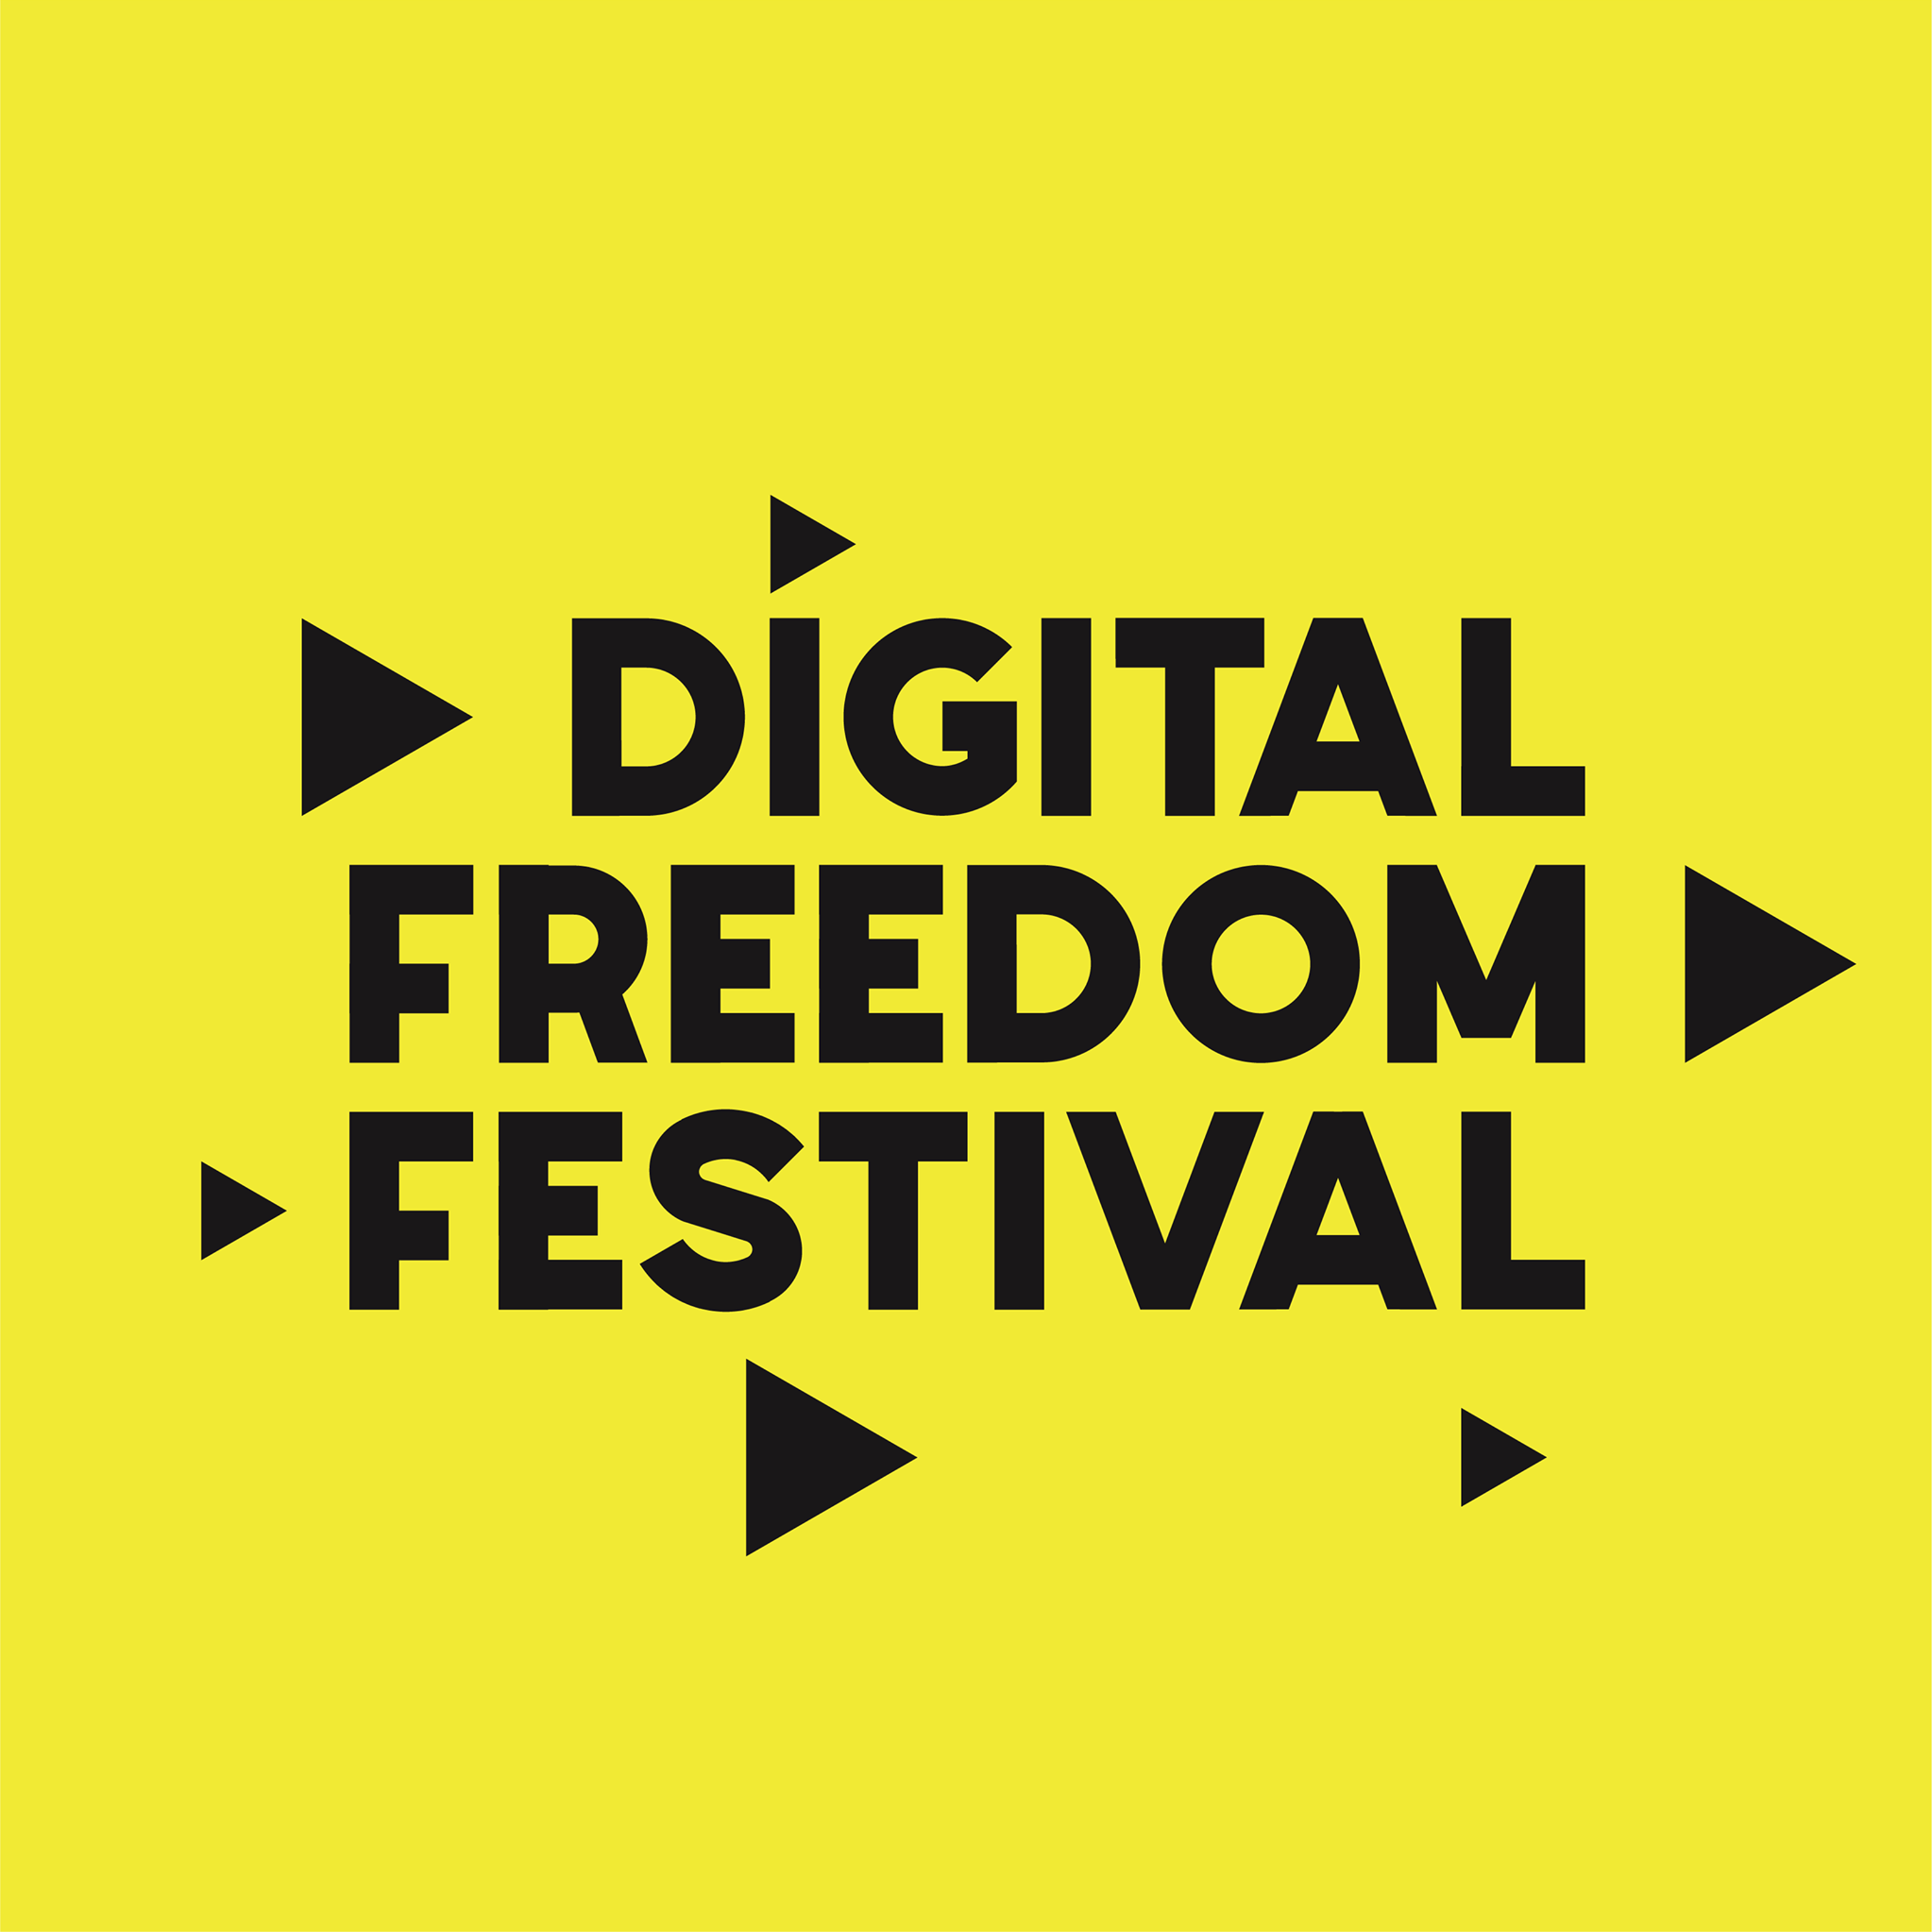 Digital Freedom Festival